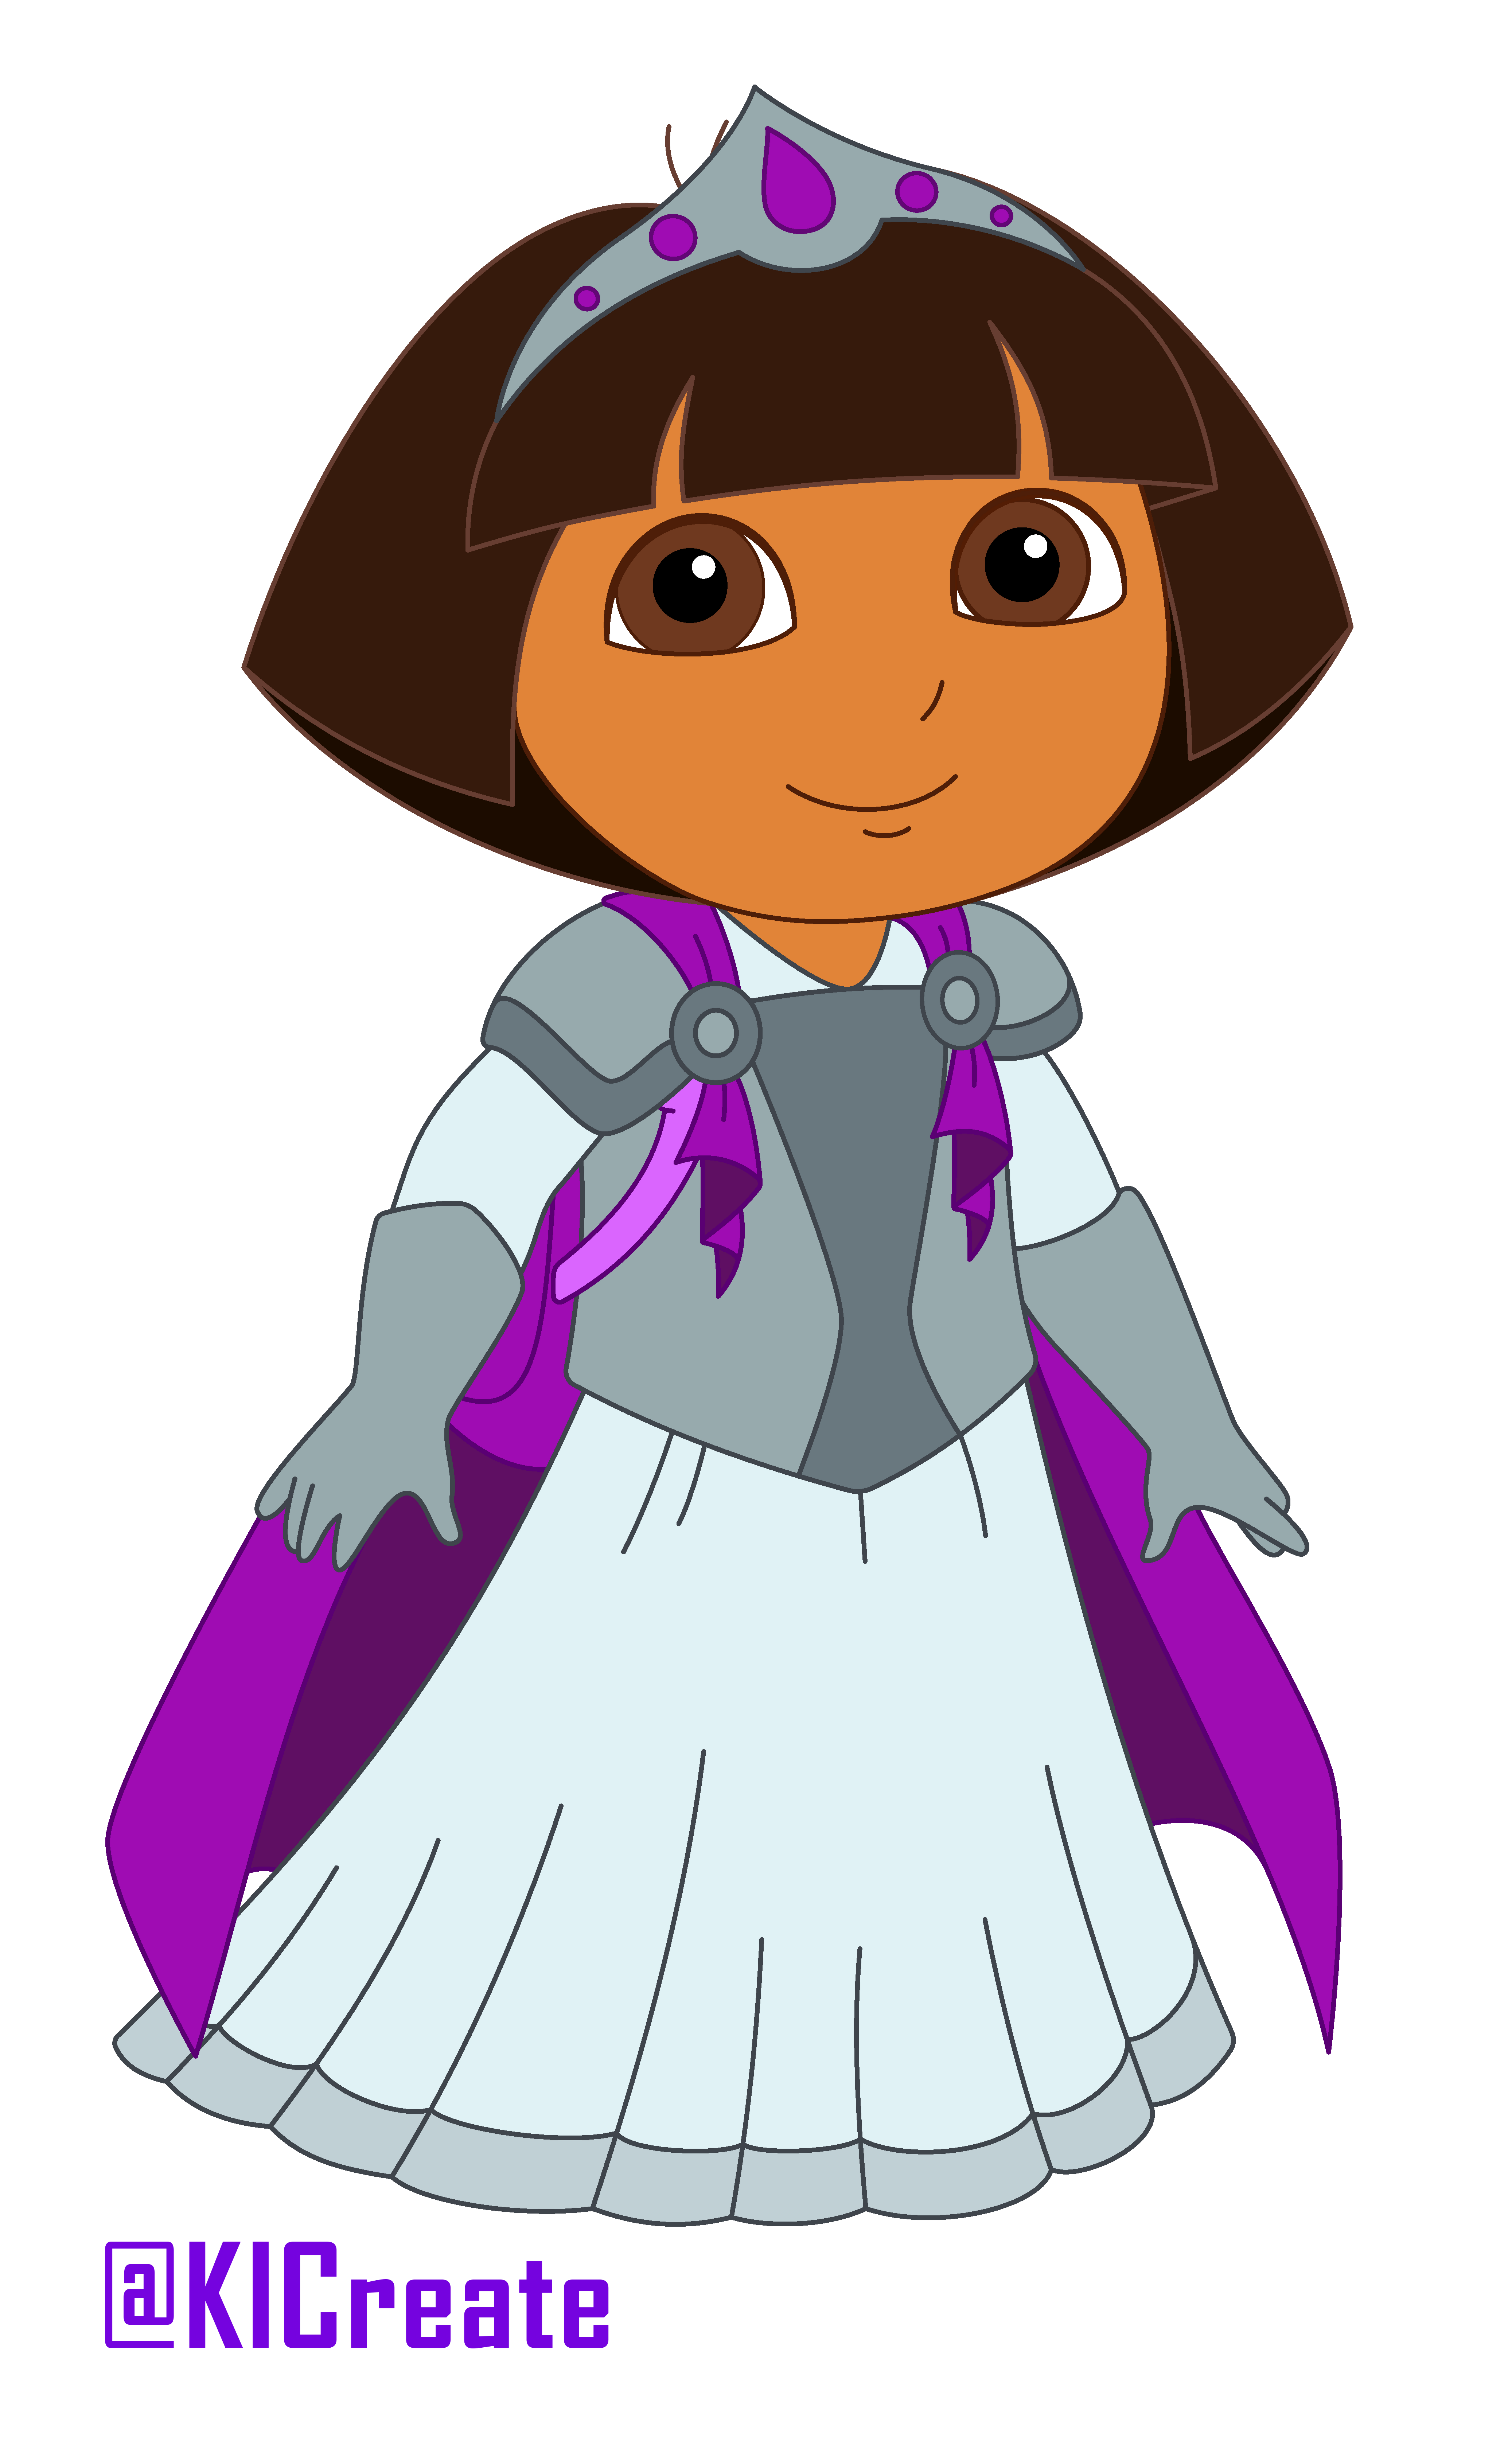 List of Dora's outfits | Dora the Explorer Wiki | Fandom